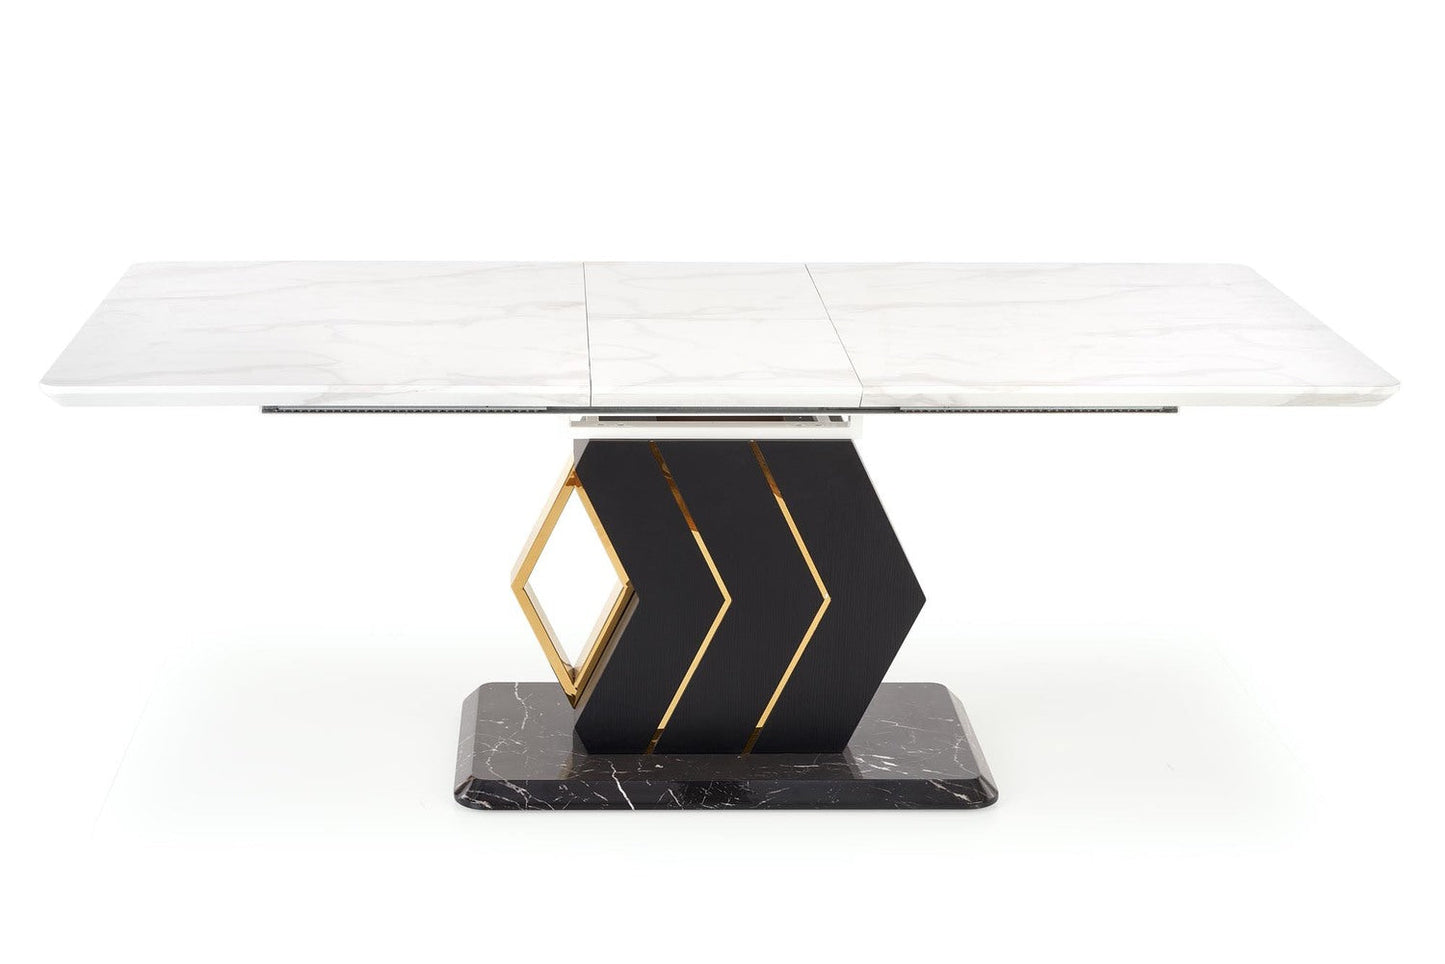 VN palīdzama galda virsma: baltā marmora, melna/zelta kāja